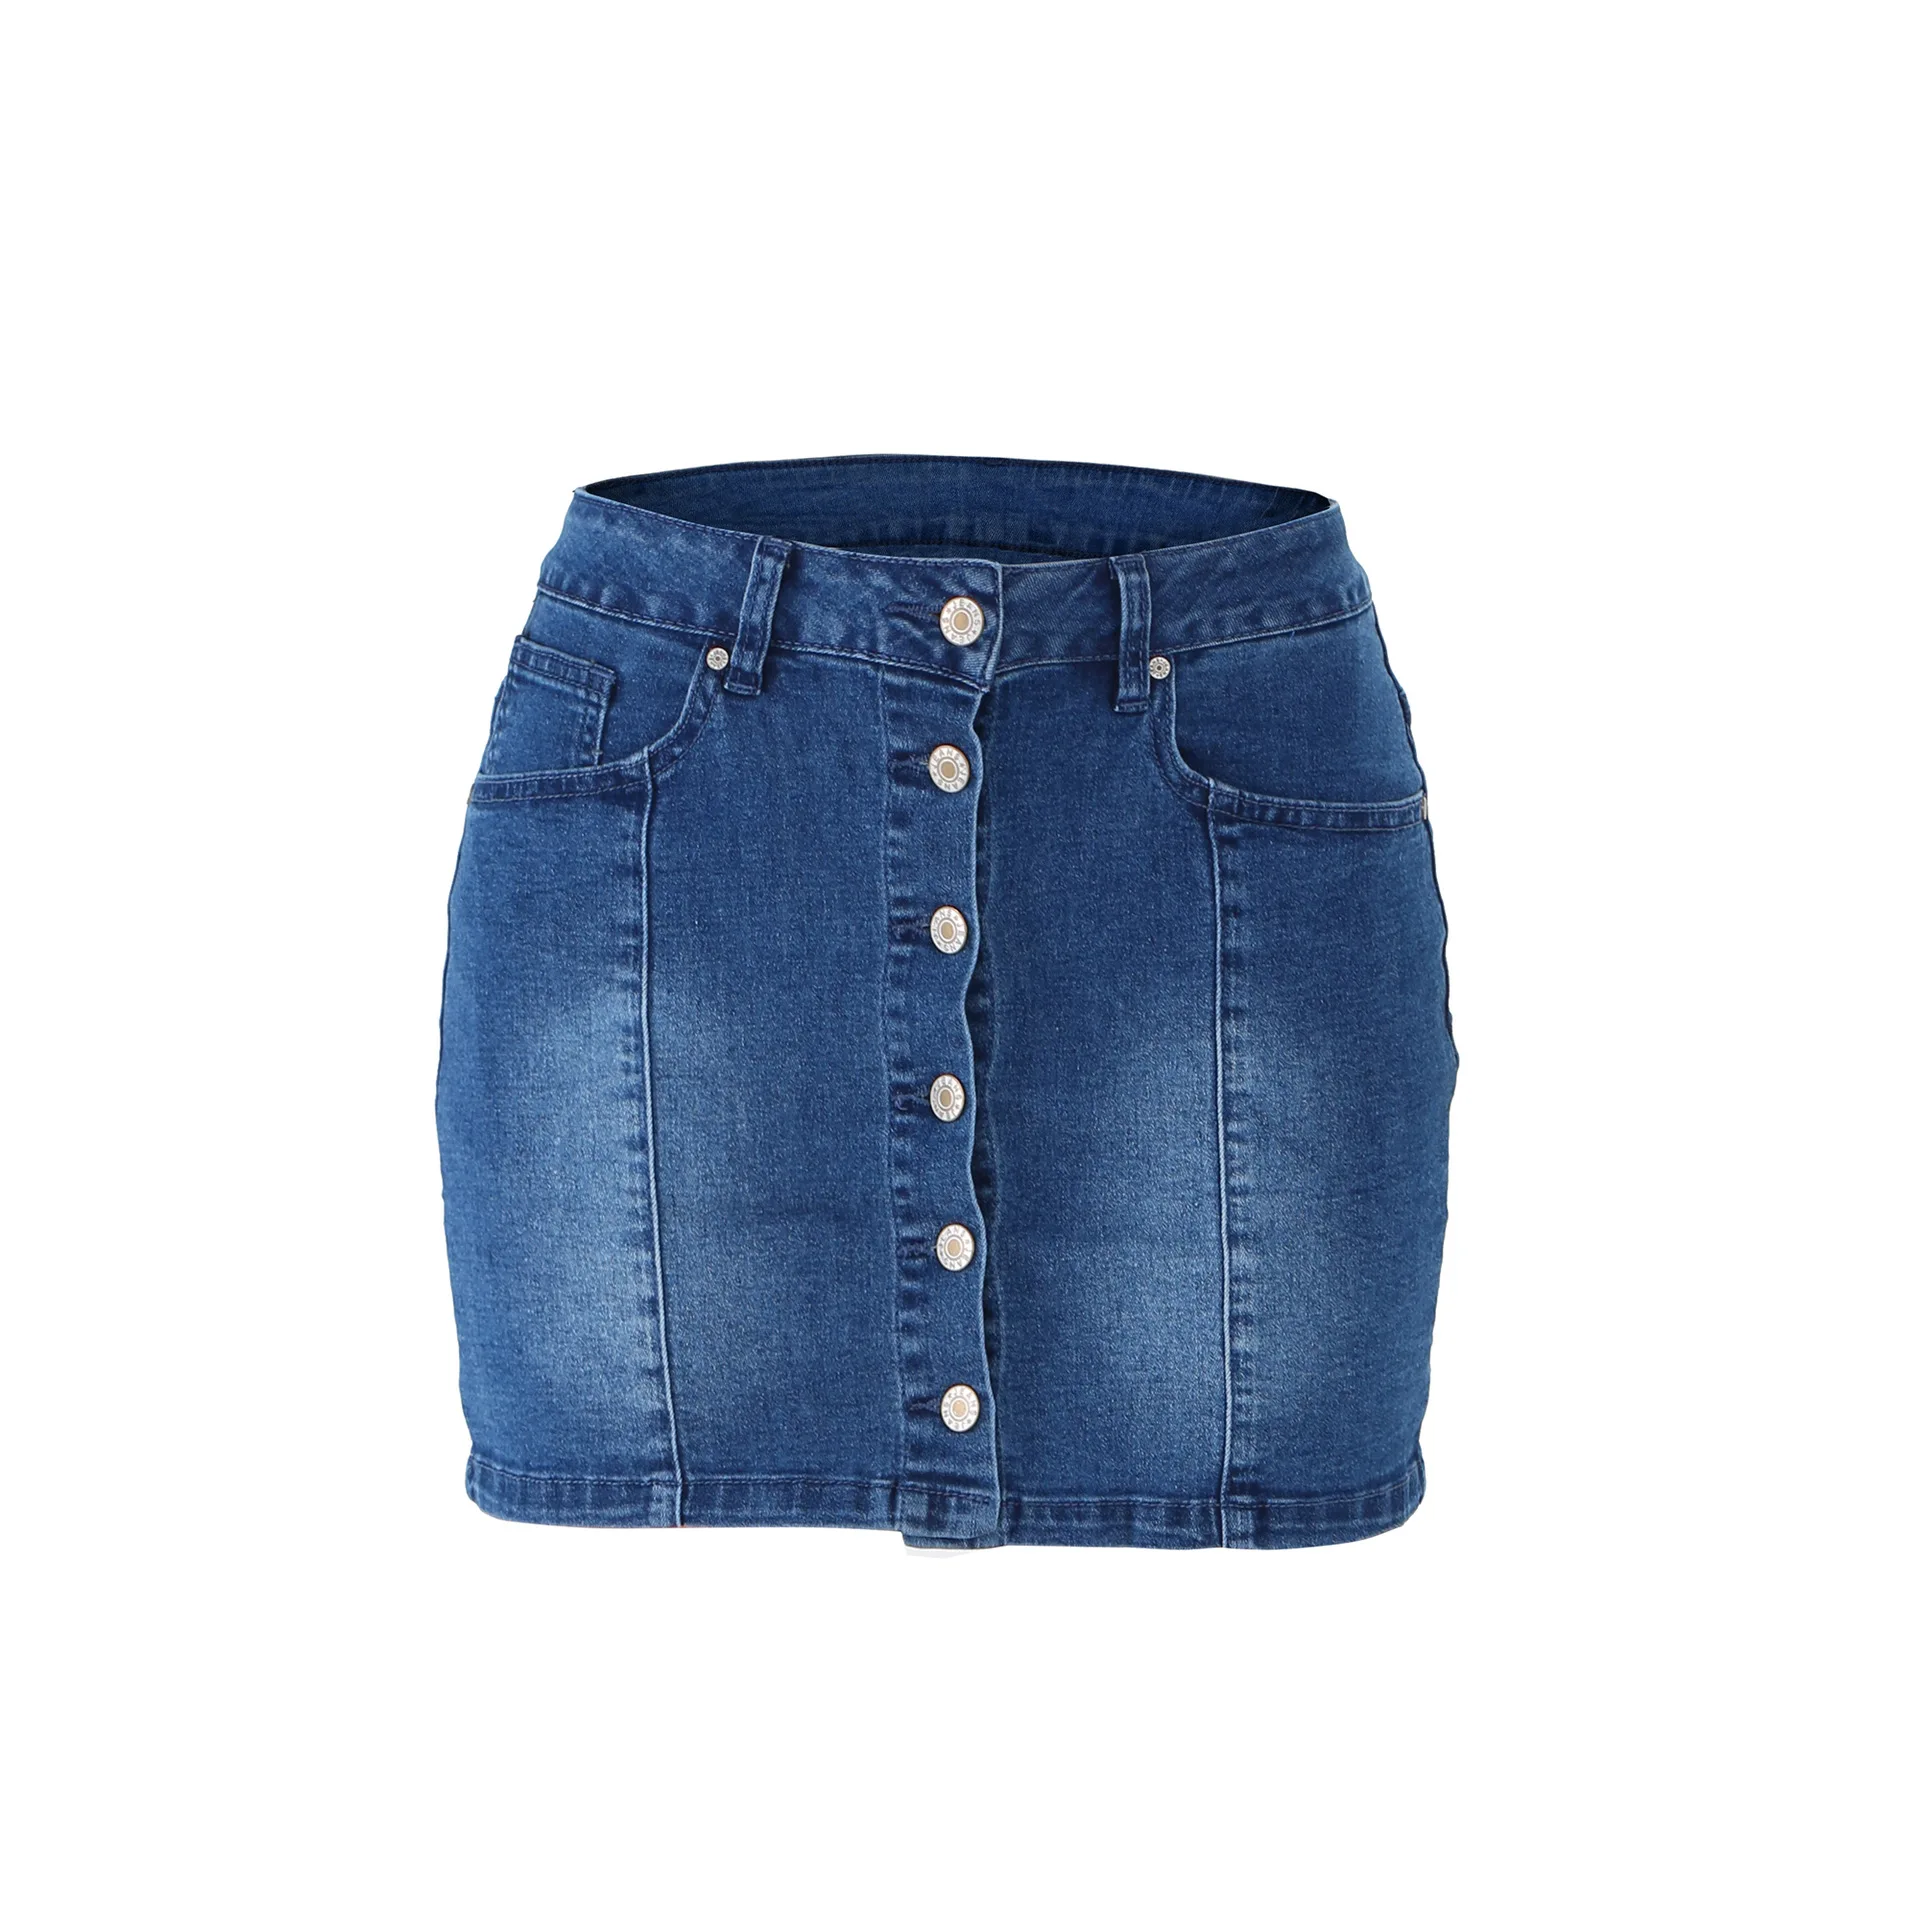 
Пакет Хип Джинсовая юбка 2019 новое летнее платье высокого качества с узкой талией мини сексуальные джинсы джинсовые шорты 